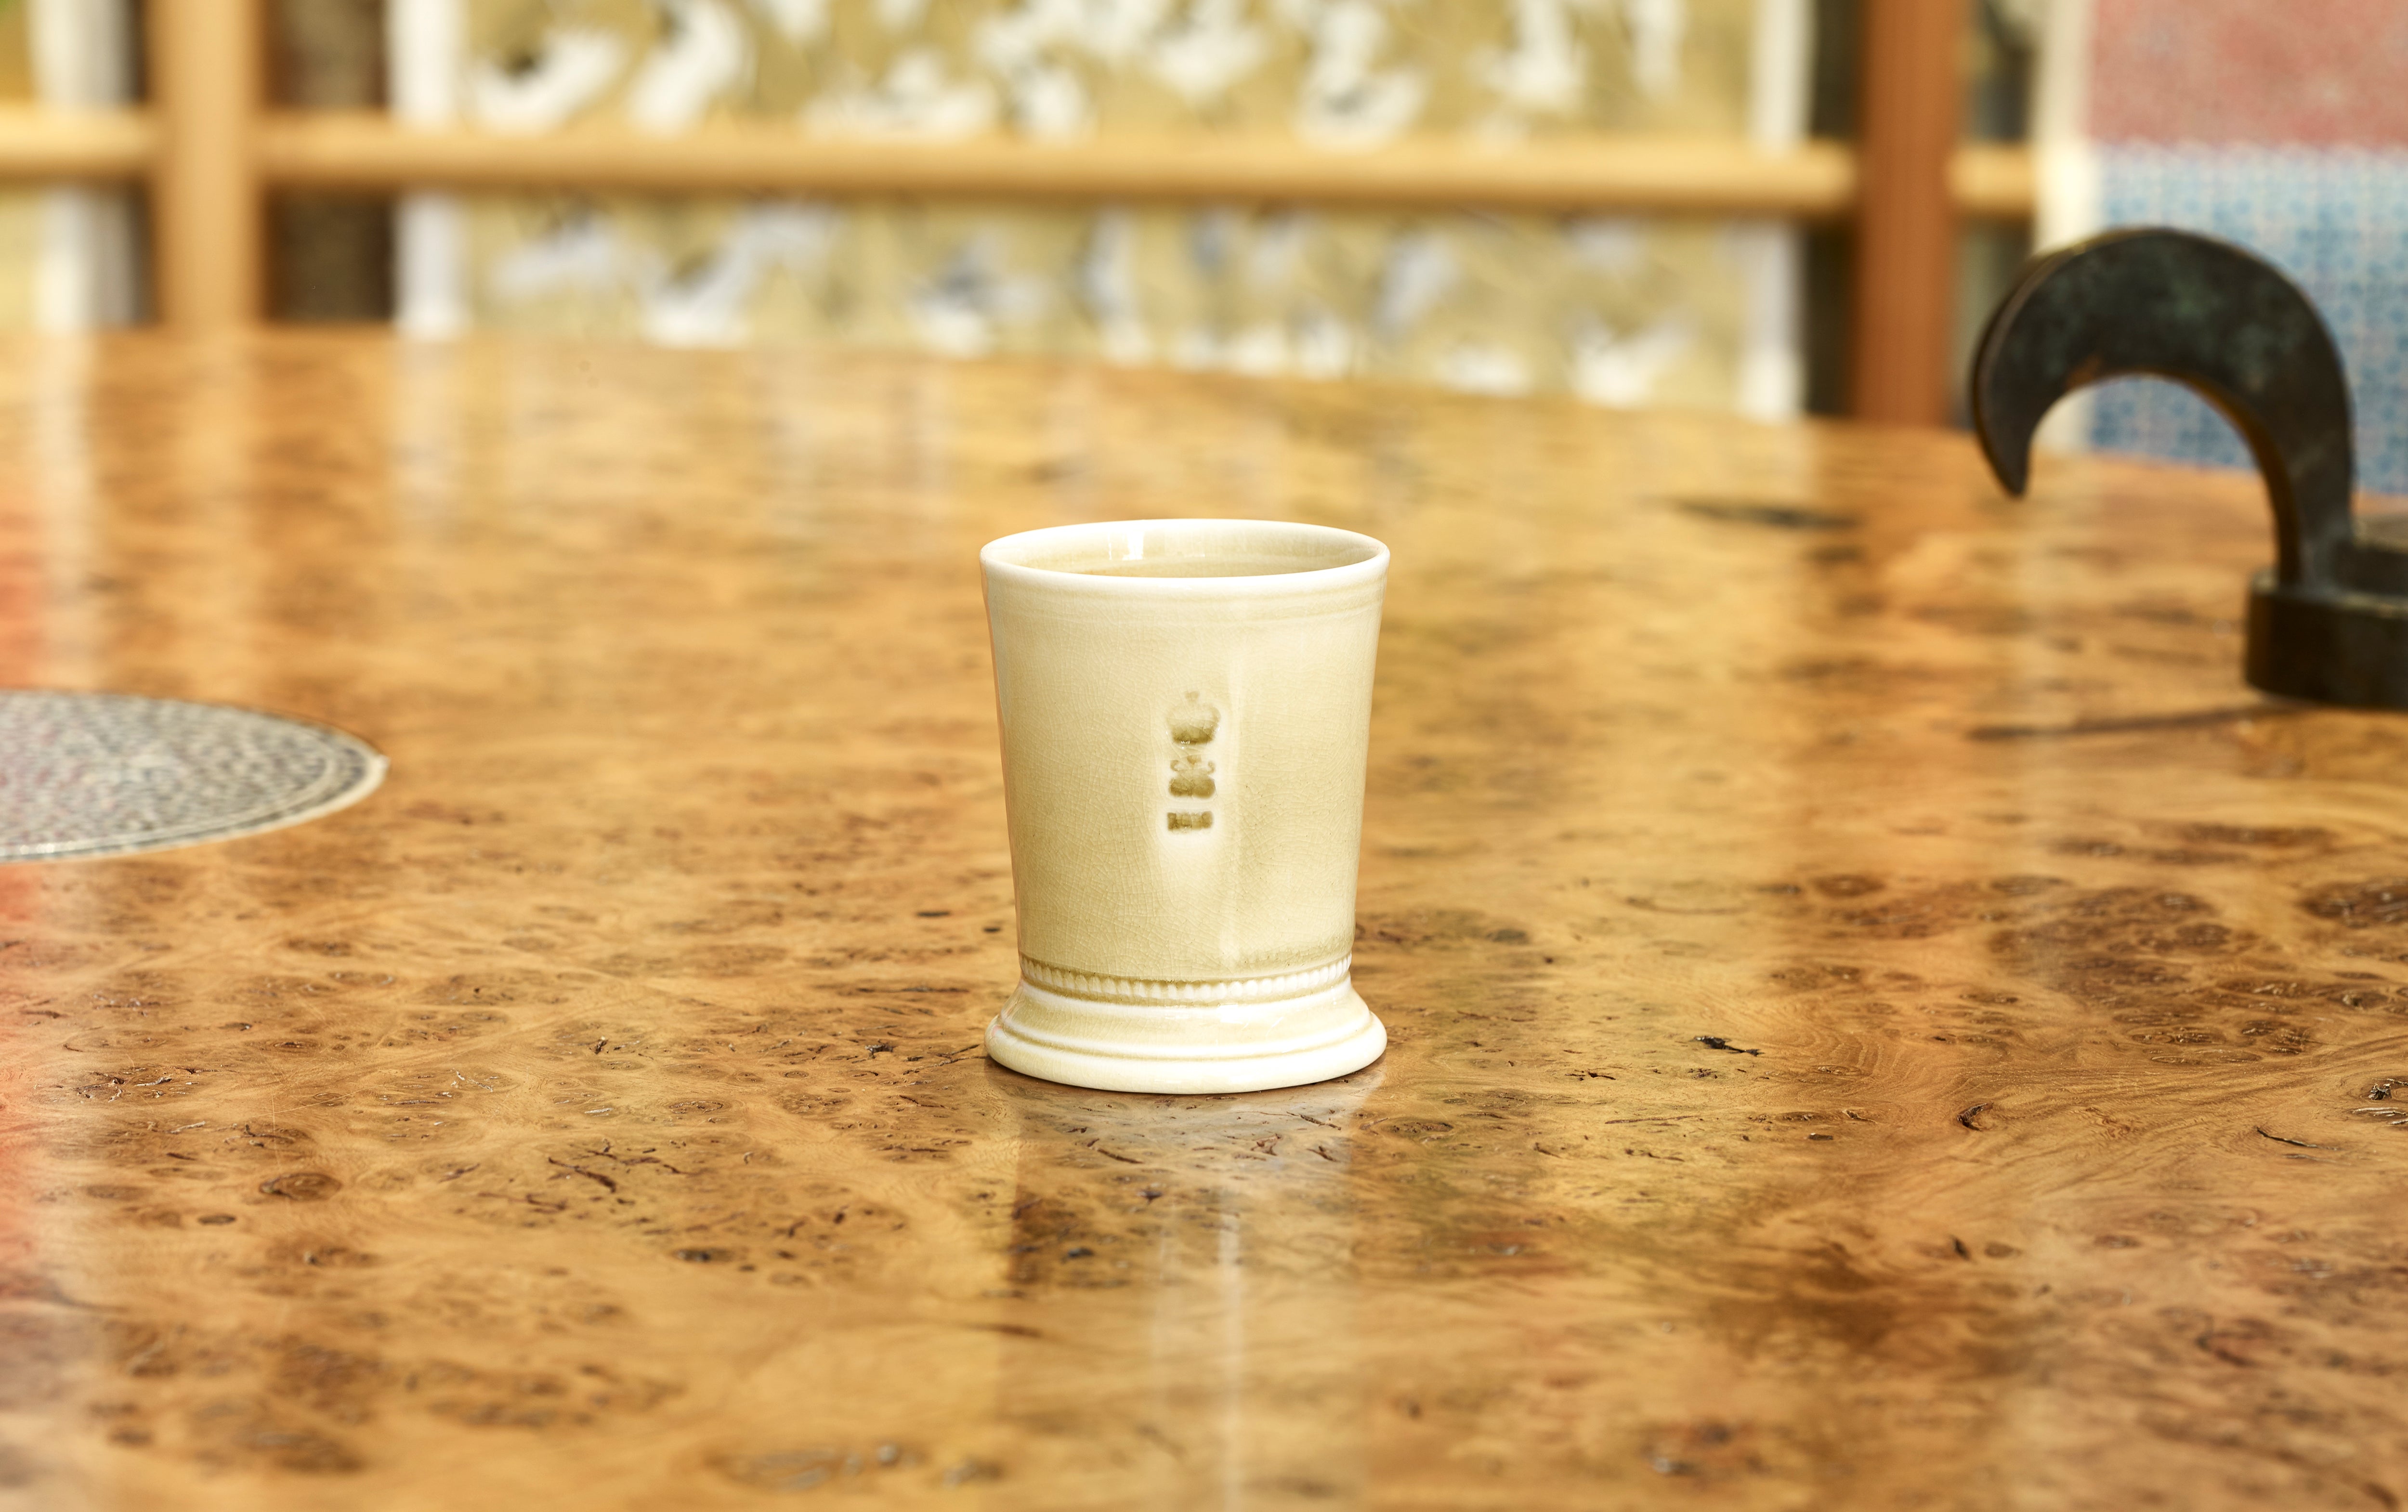 Steve Harrison Ceramic Desk Cup, No.88 Yellow Porcelain